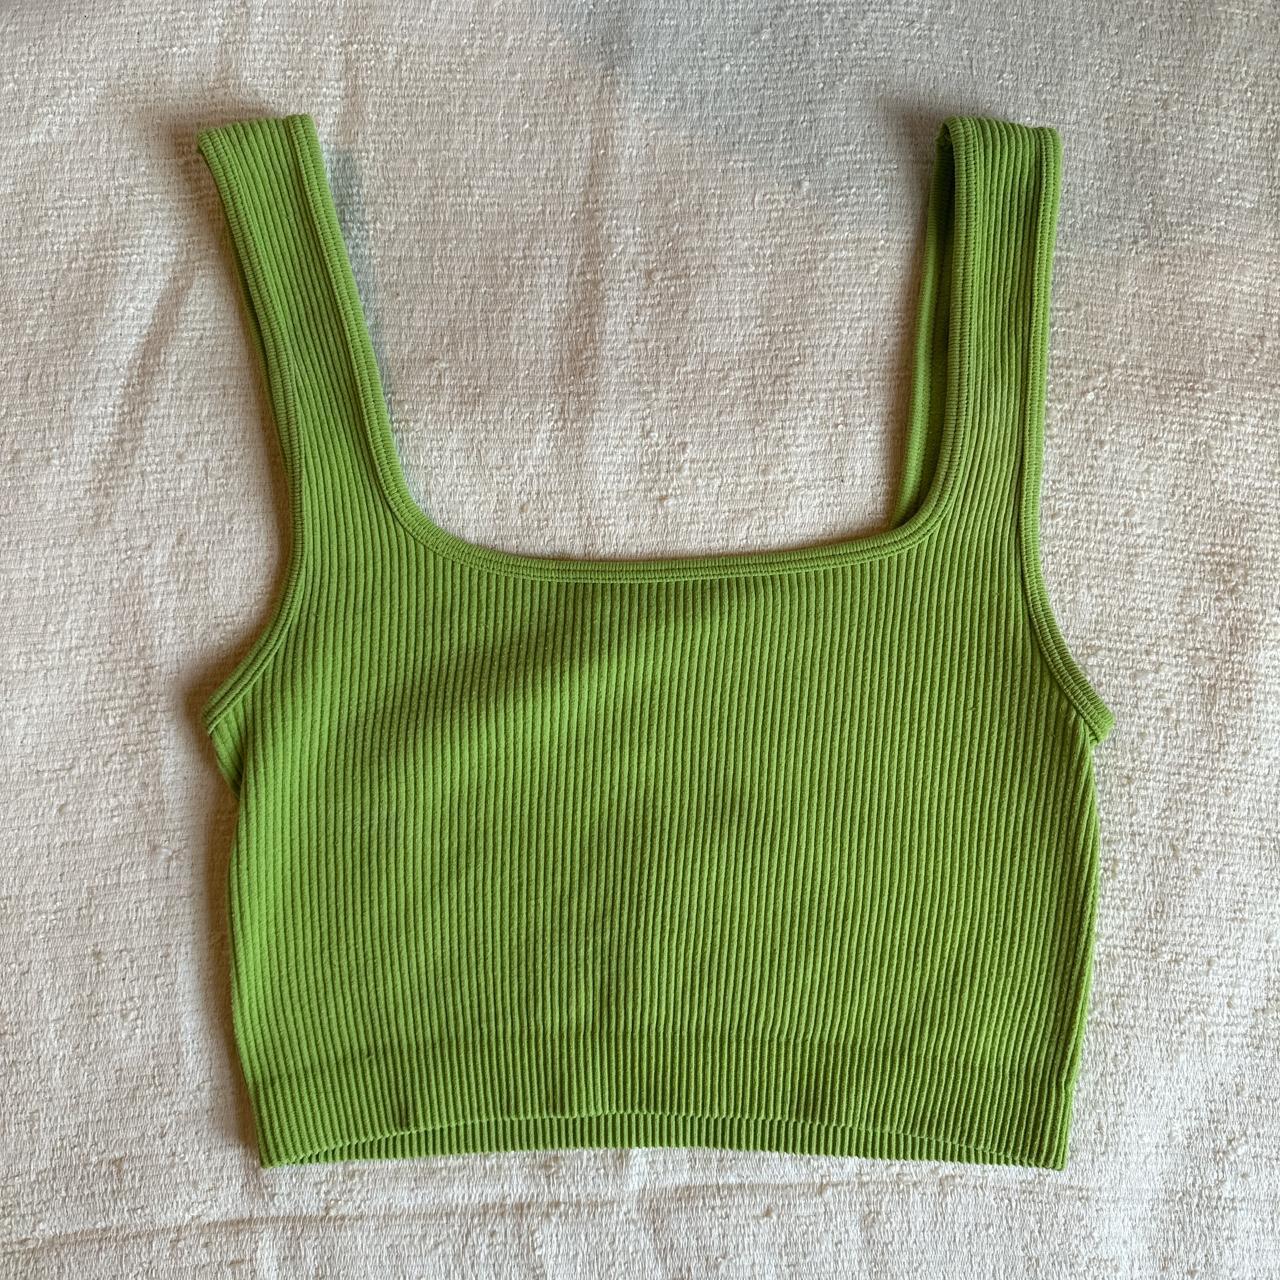 Zara Women's Green Vests-tanks-camis | Depop